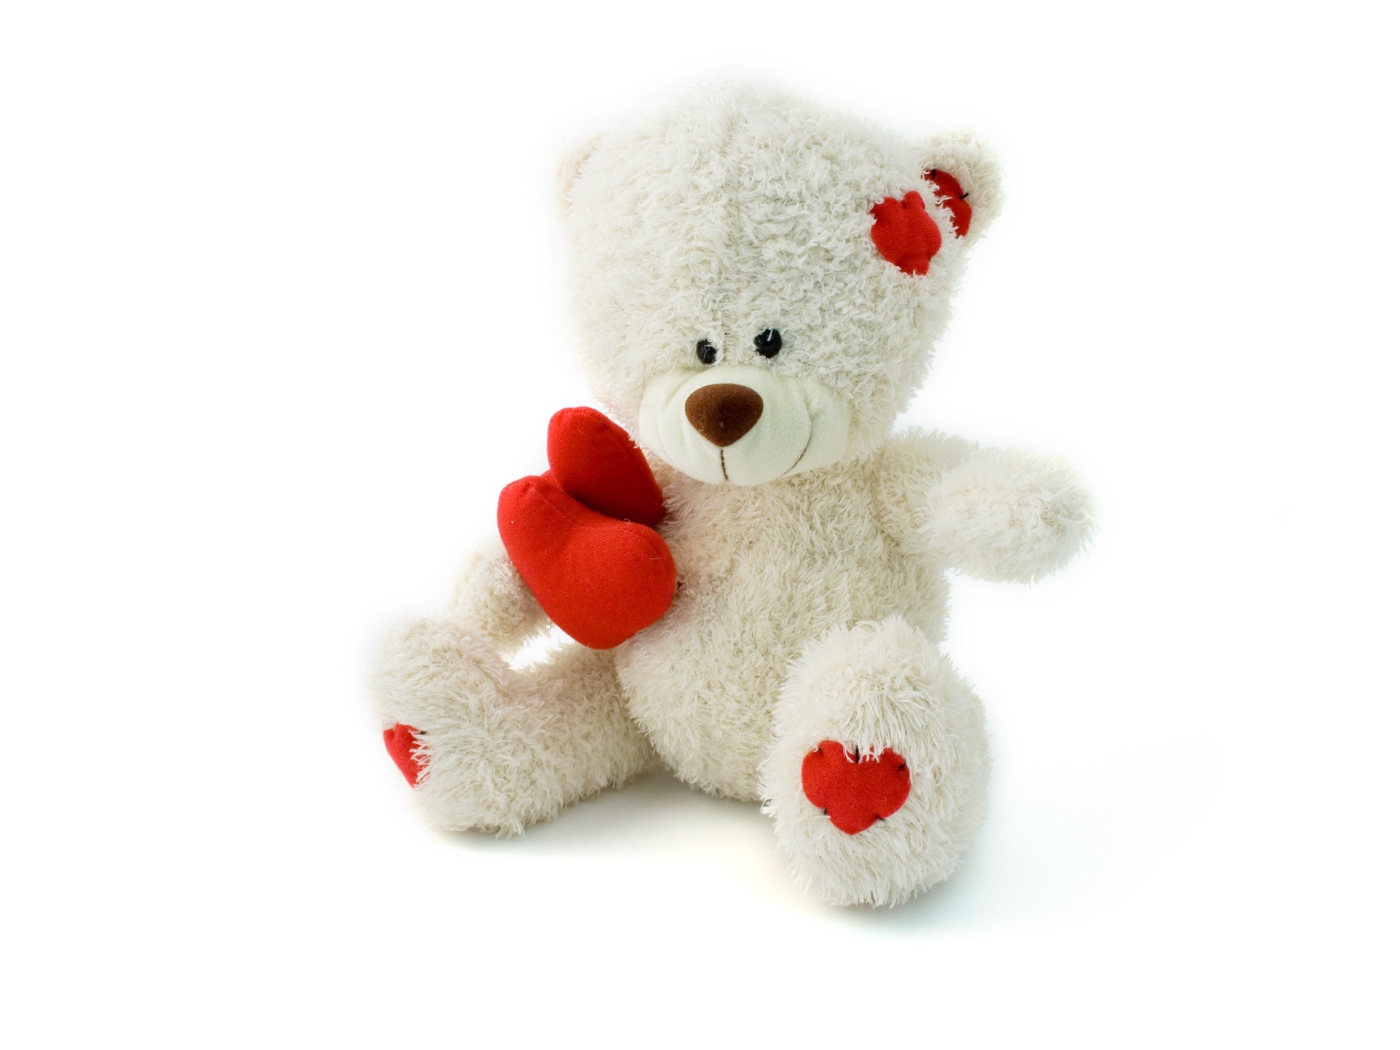 Polar bear Teddy with red heart